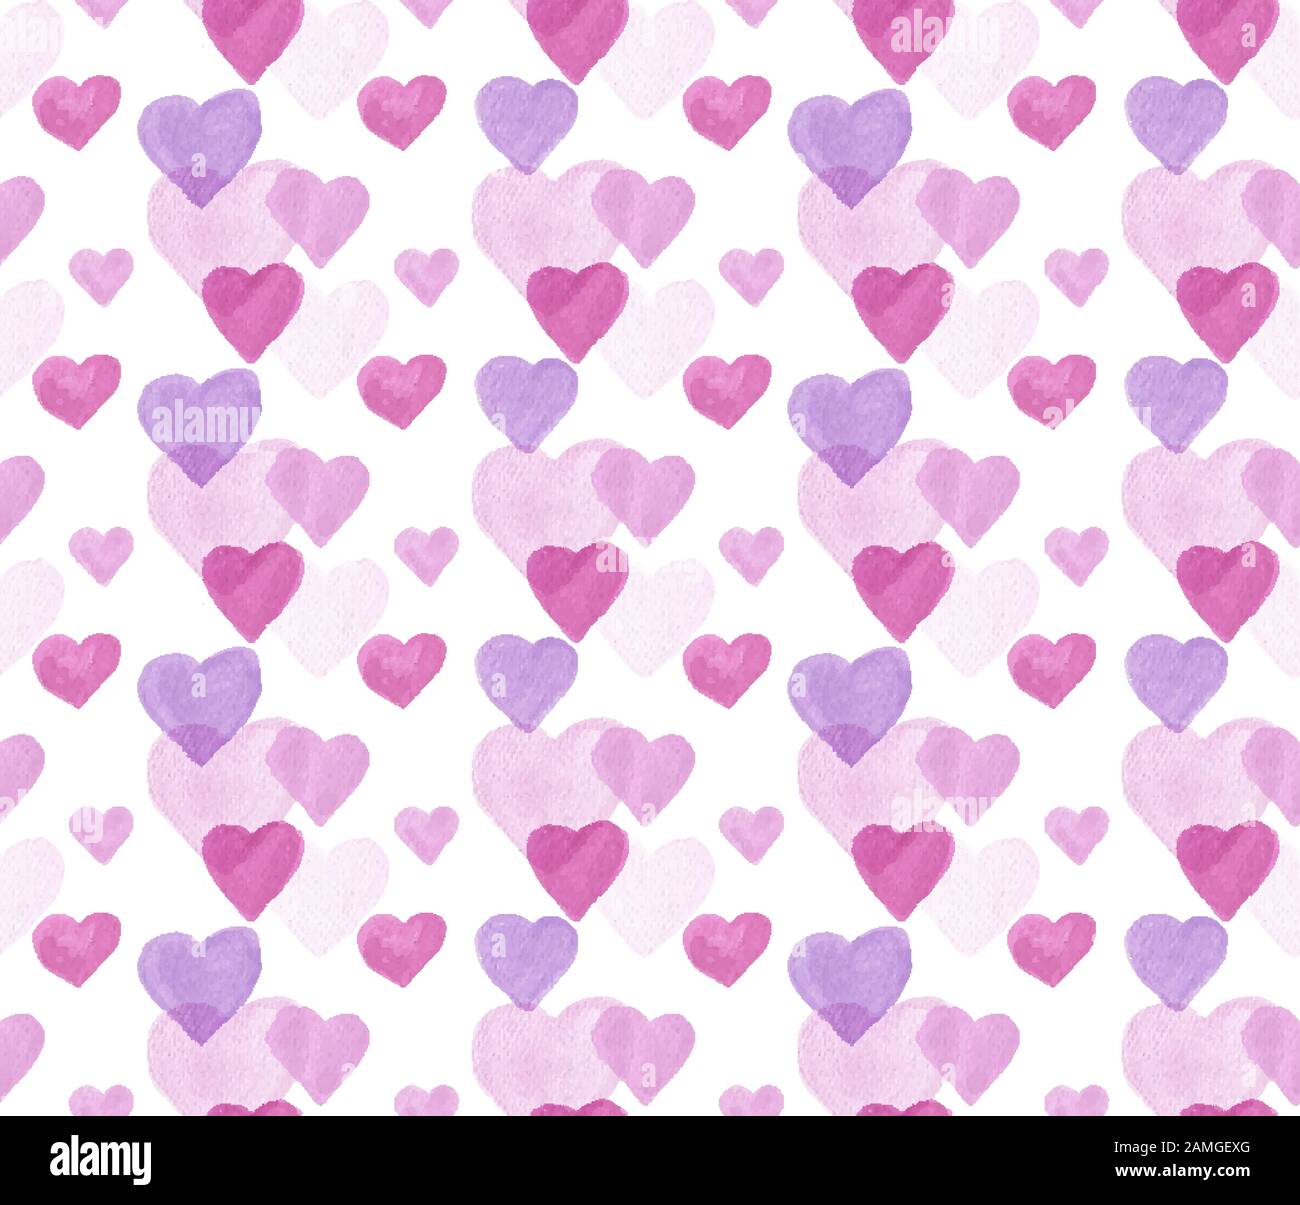 Khám phá hình ví dụ hoàn hảo về Vector Valentine Day Seamless Pattern. Với nhiều màu sắc tươi sáng và họa tiết độc đáo, mẫu trang trí này là sự kết hợp hoàn hảo của tình yêu và sáng tạo. Đến và chiêm ngưỡng ngay!